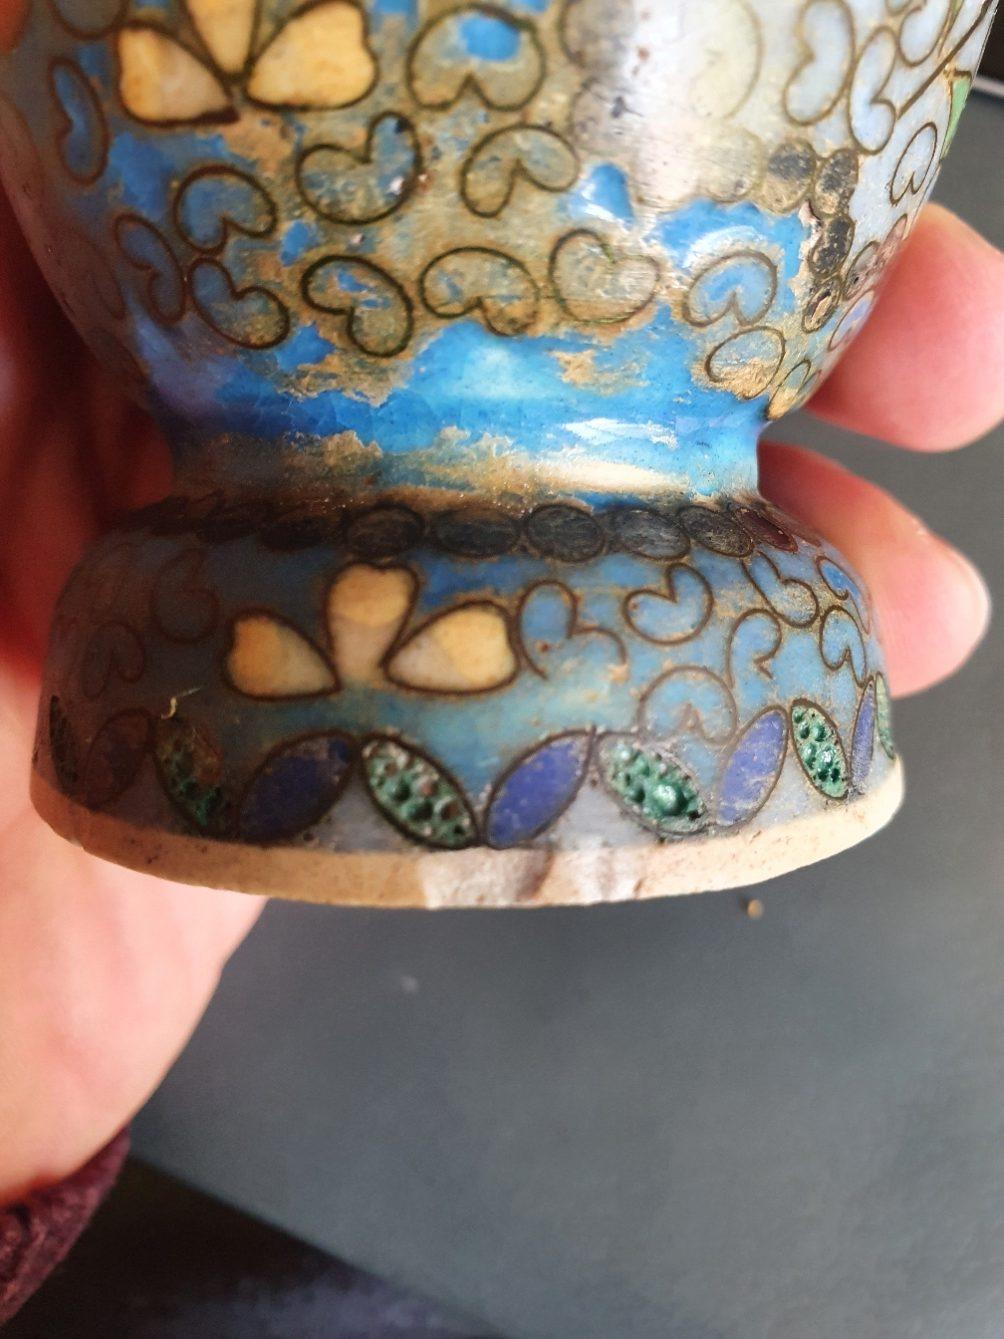 Description

Paire de vases en poterie cloisonnée Totai Shippo. Les vases ont un corps de couleur crème qui est normalement associé à la porcelaine de Satsuma. Il a été décoré d'un grand nombre de petits cloisons (fils) en laiton de couleur